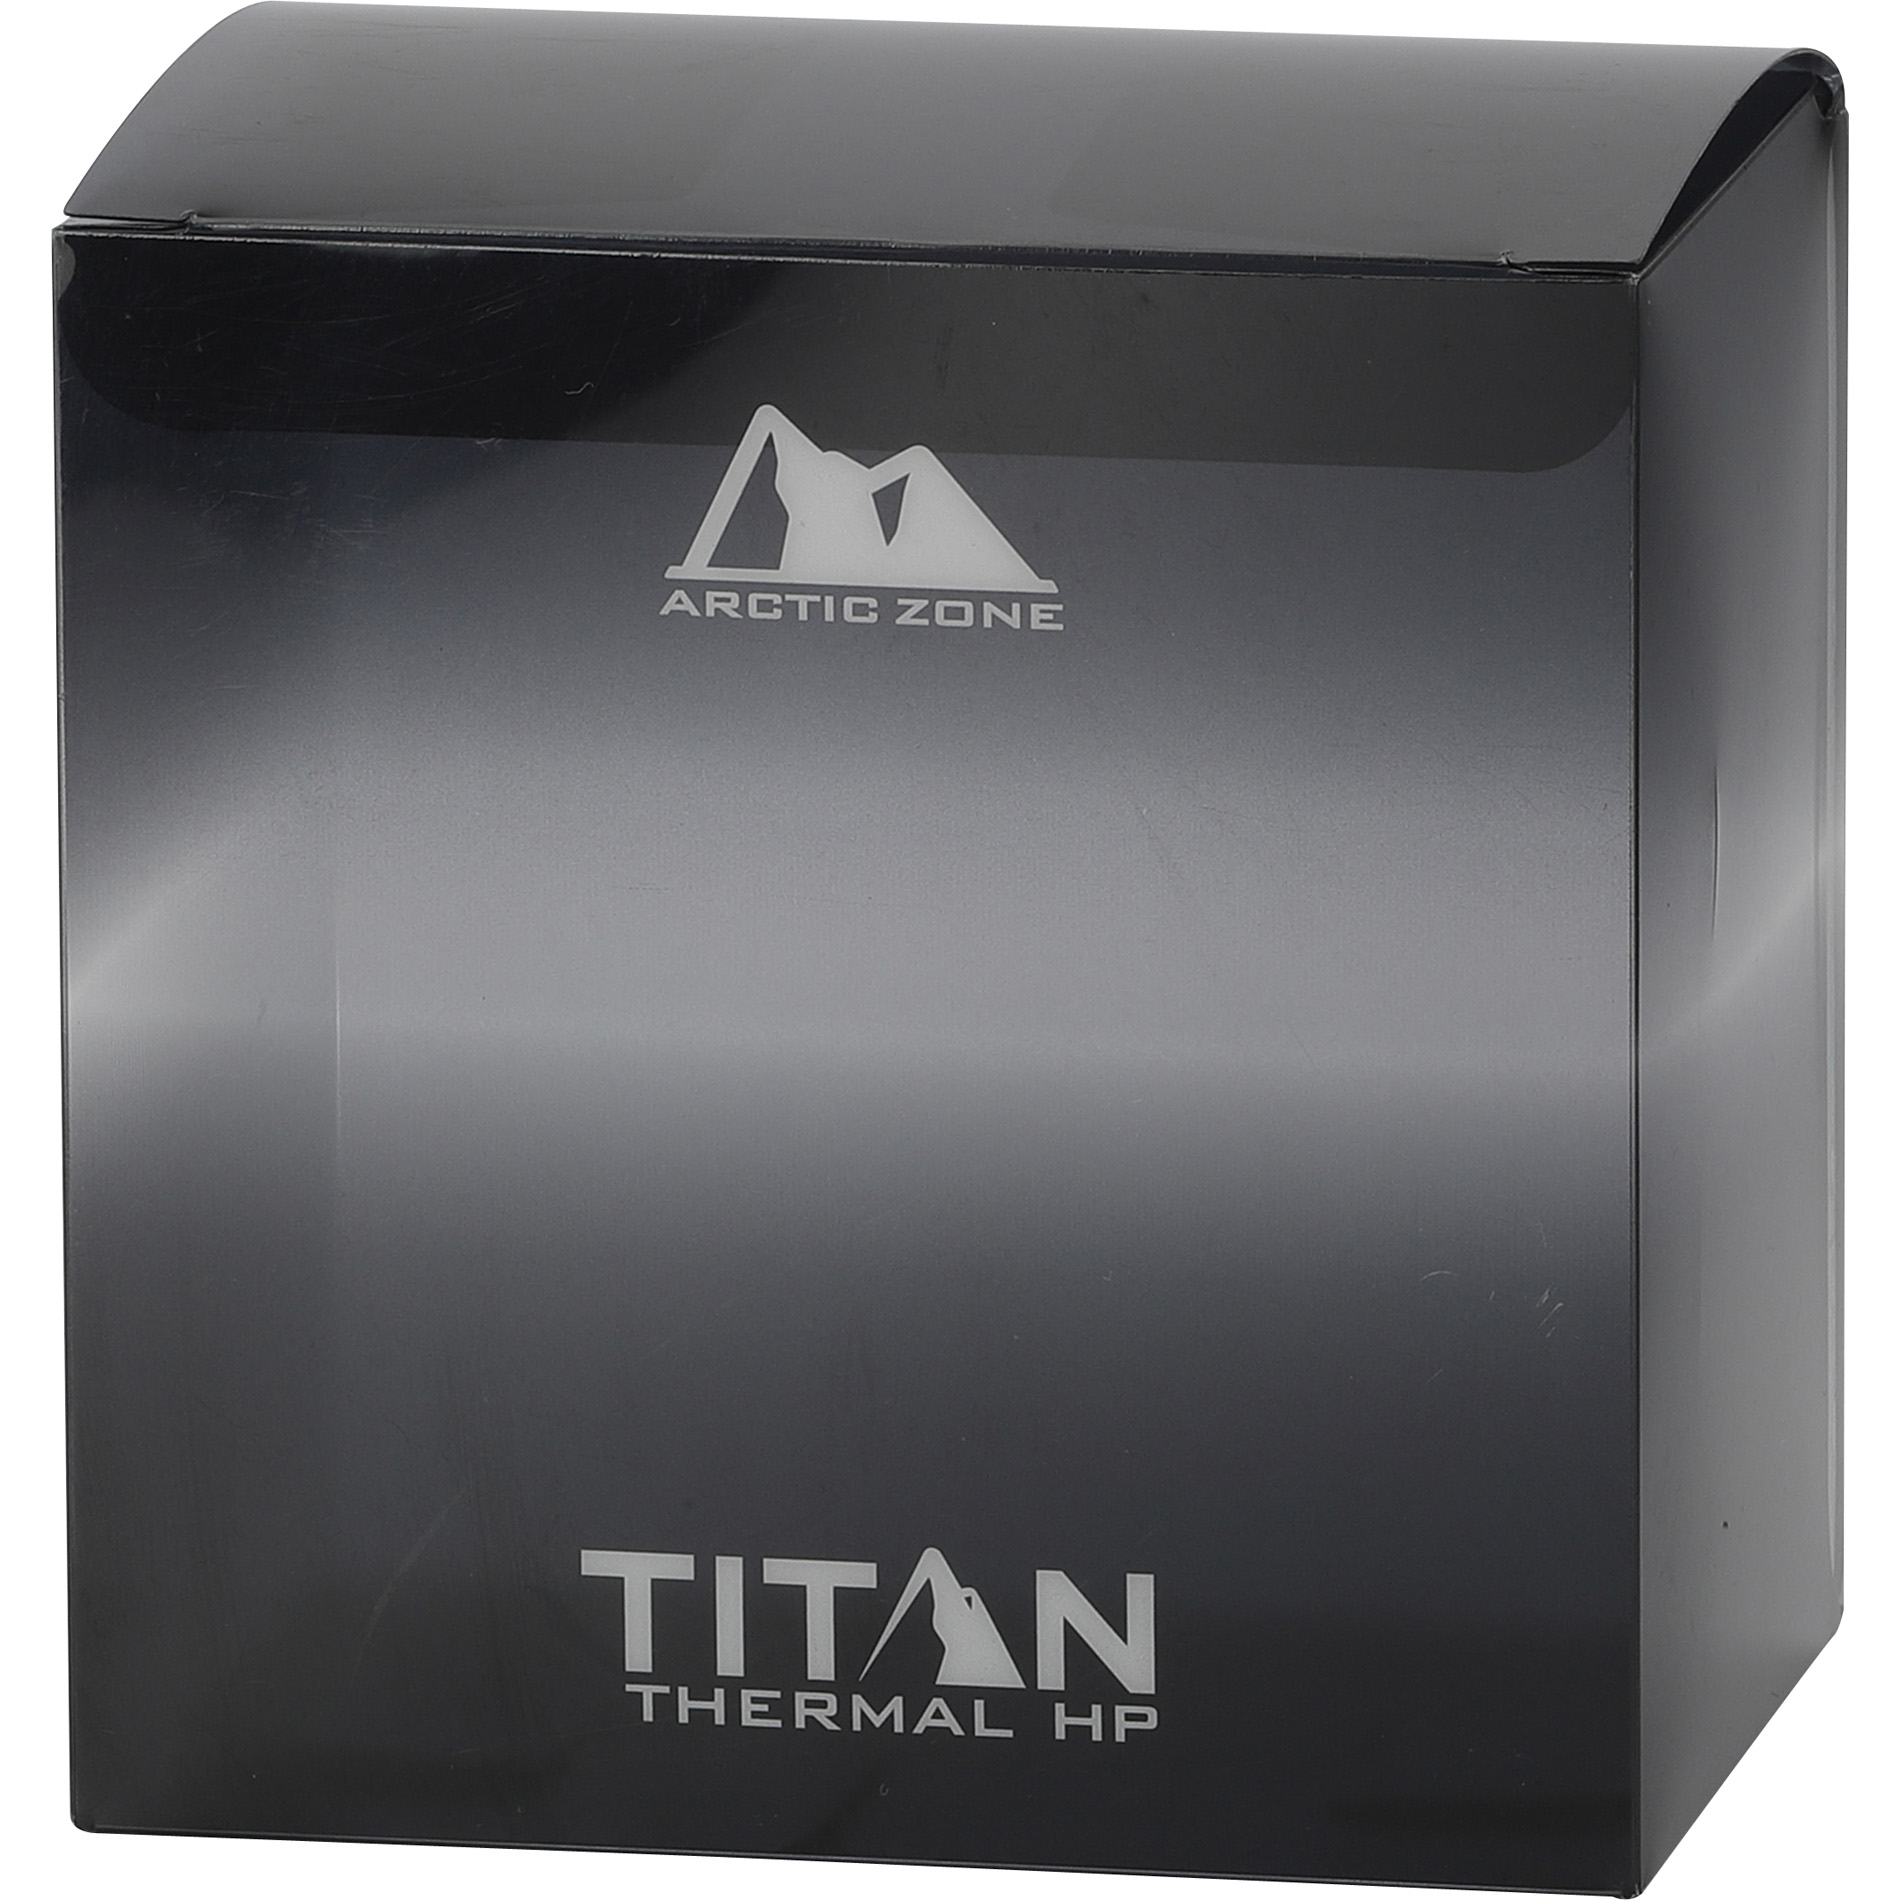  Arctic Zone Titan Thermal HP Mug - 24 oz. 157067